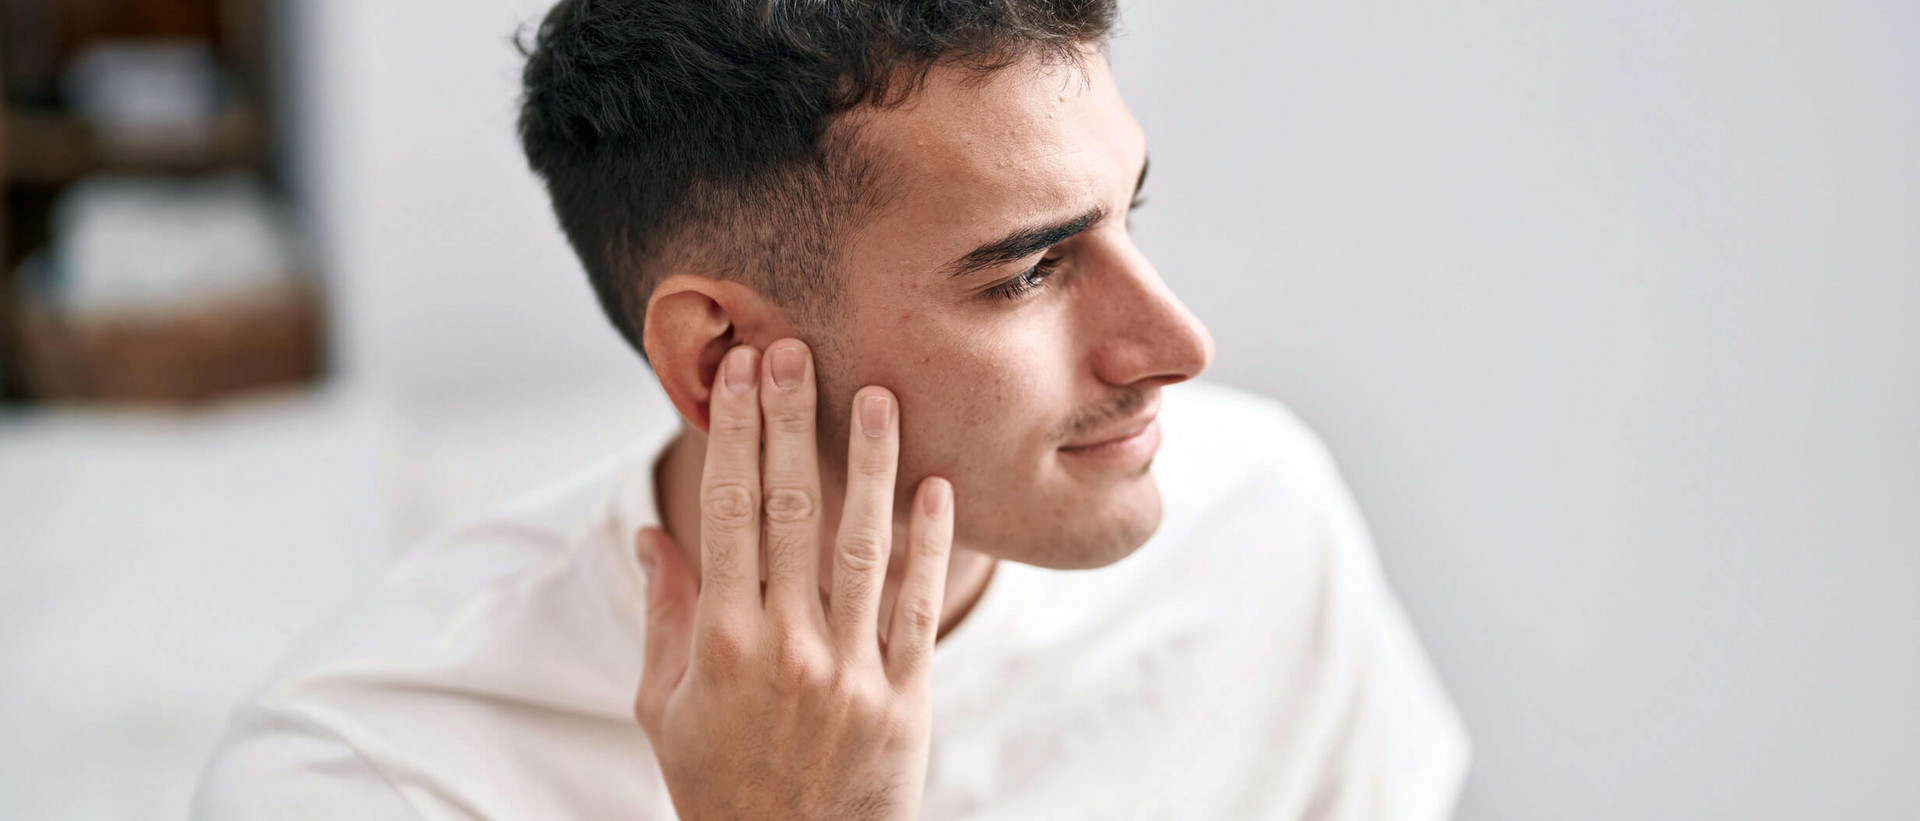 Ein junger Mann mit braunen Locken ist im Profil zu sehen. Er hält seine Hand an sein rechtes Ohr.